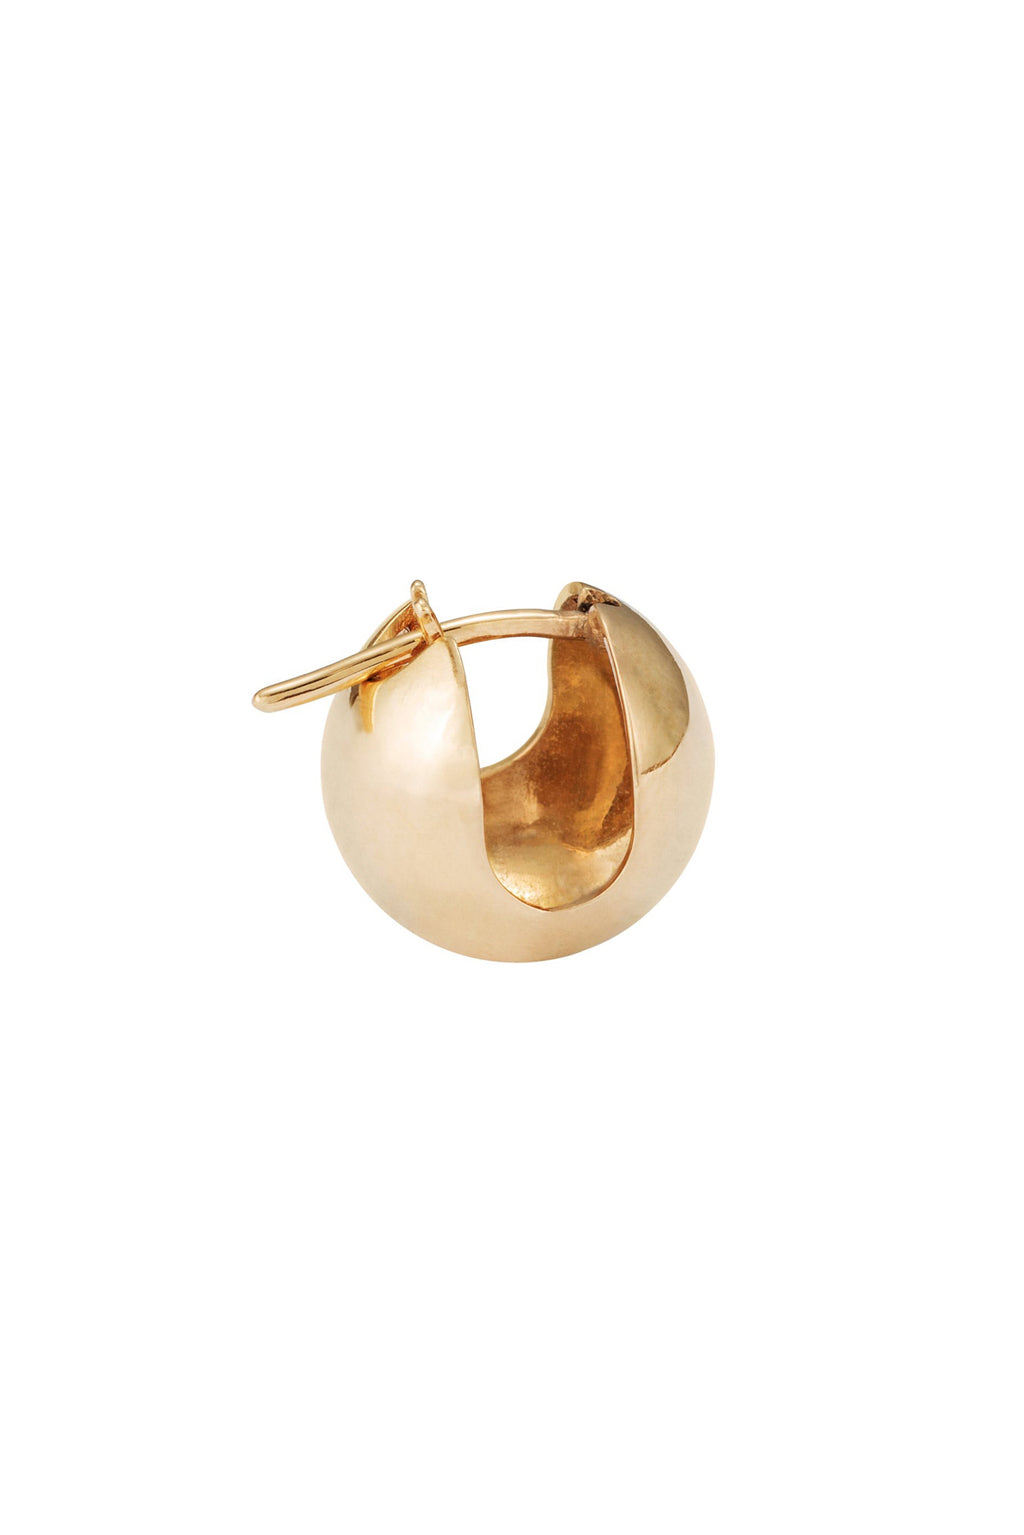 Sphere gold earring